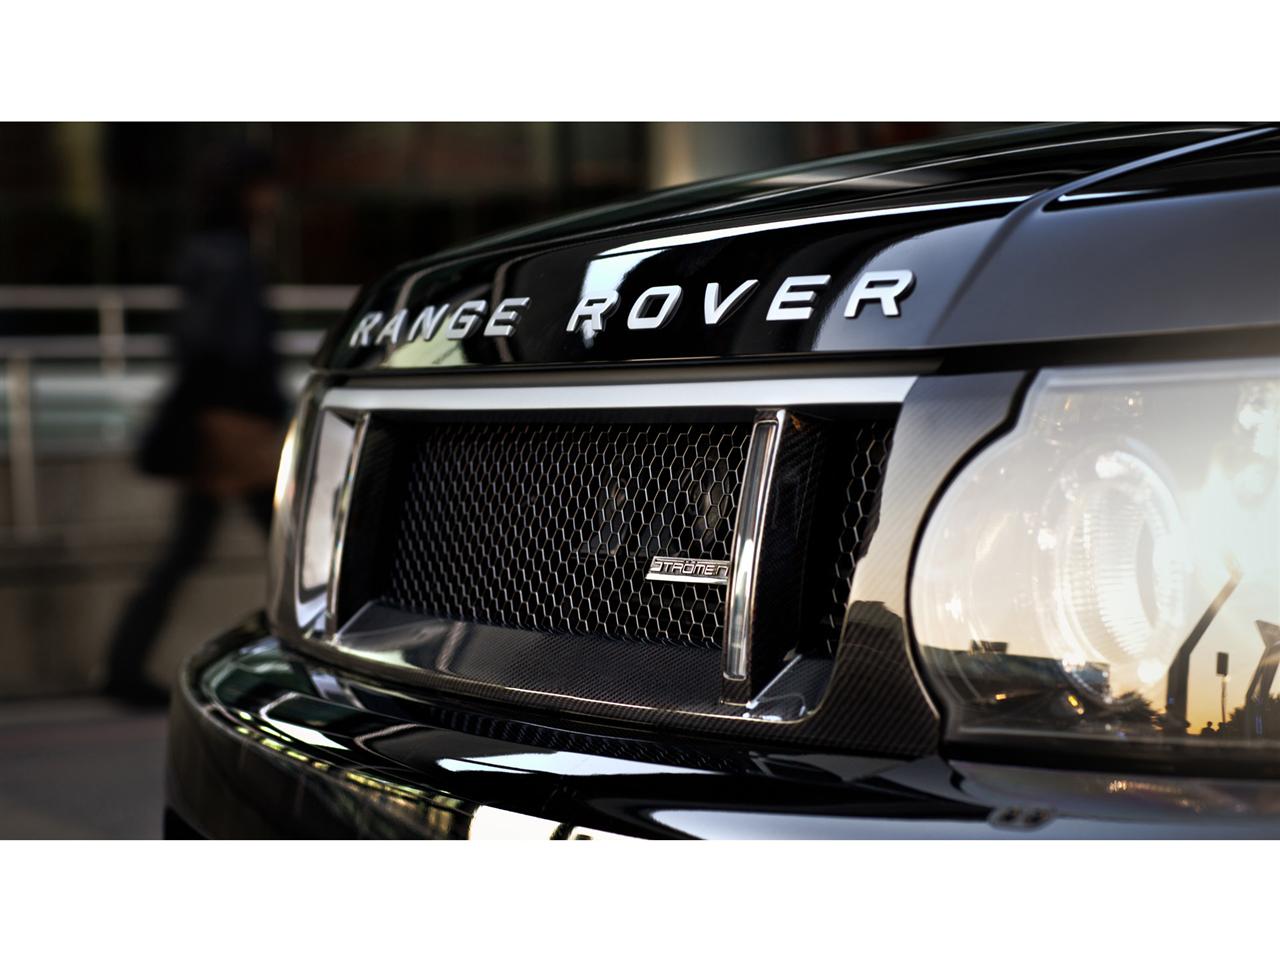 2012 Stromen Range Rover Sport RRS Edition Carbon